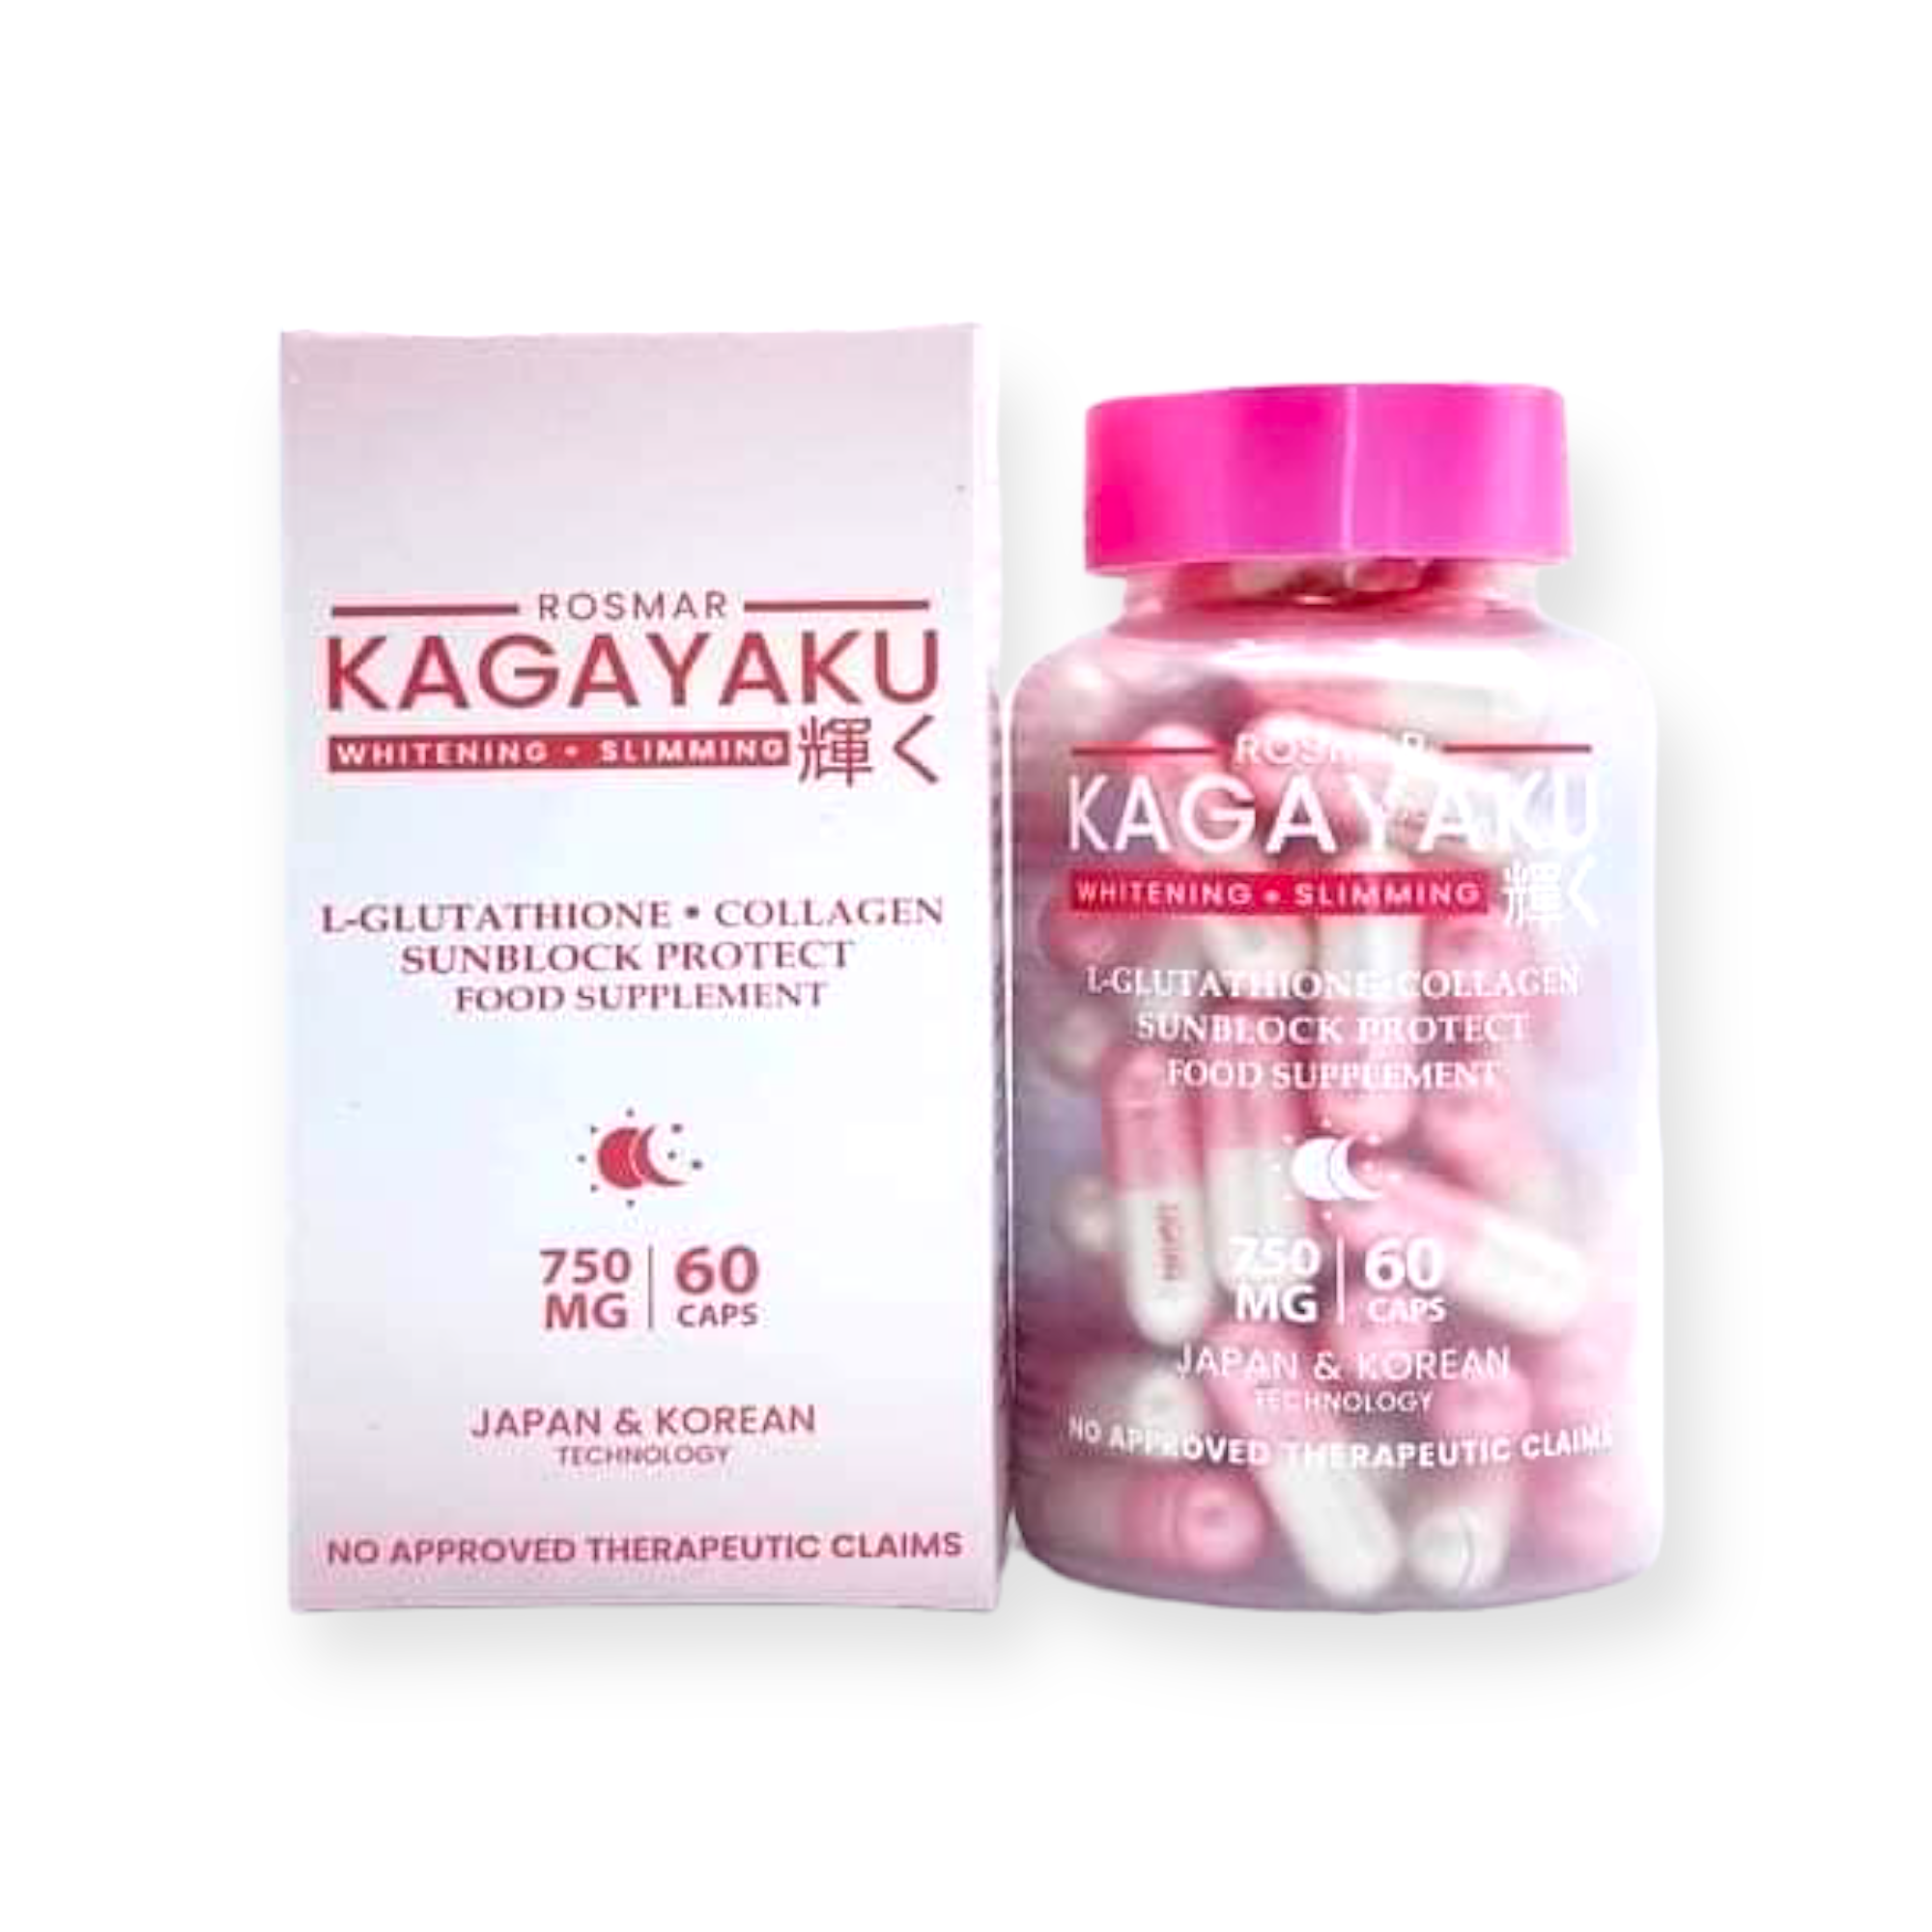 Rosmar Kagayaku - Whitening Slimming Food Supplement - 60 Capsules